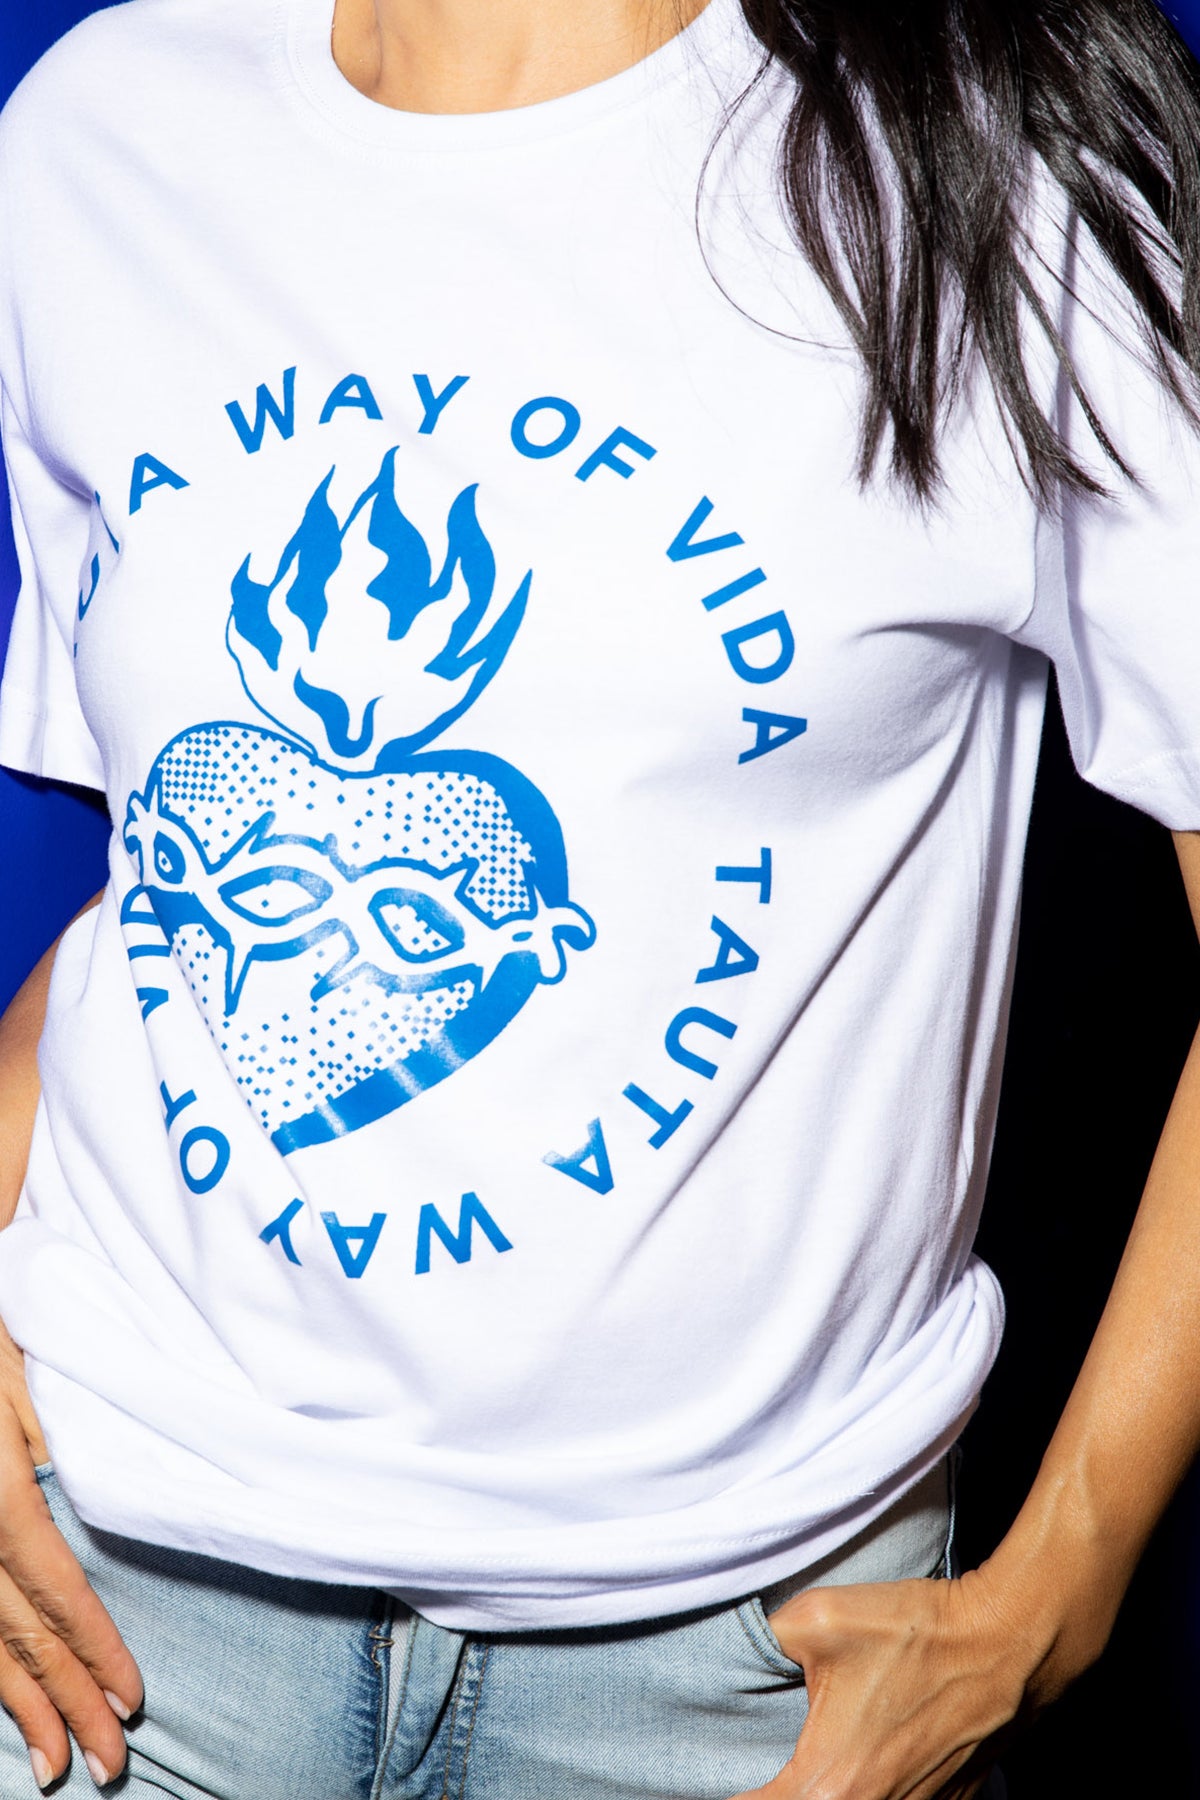 Tauta Way Of Vida Shirt